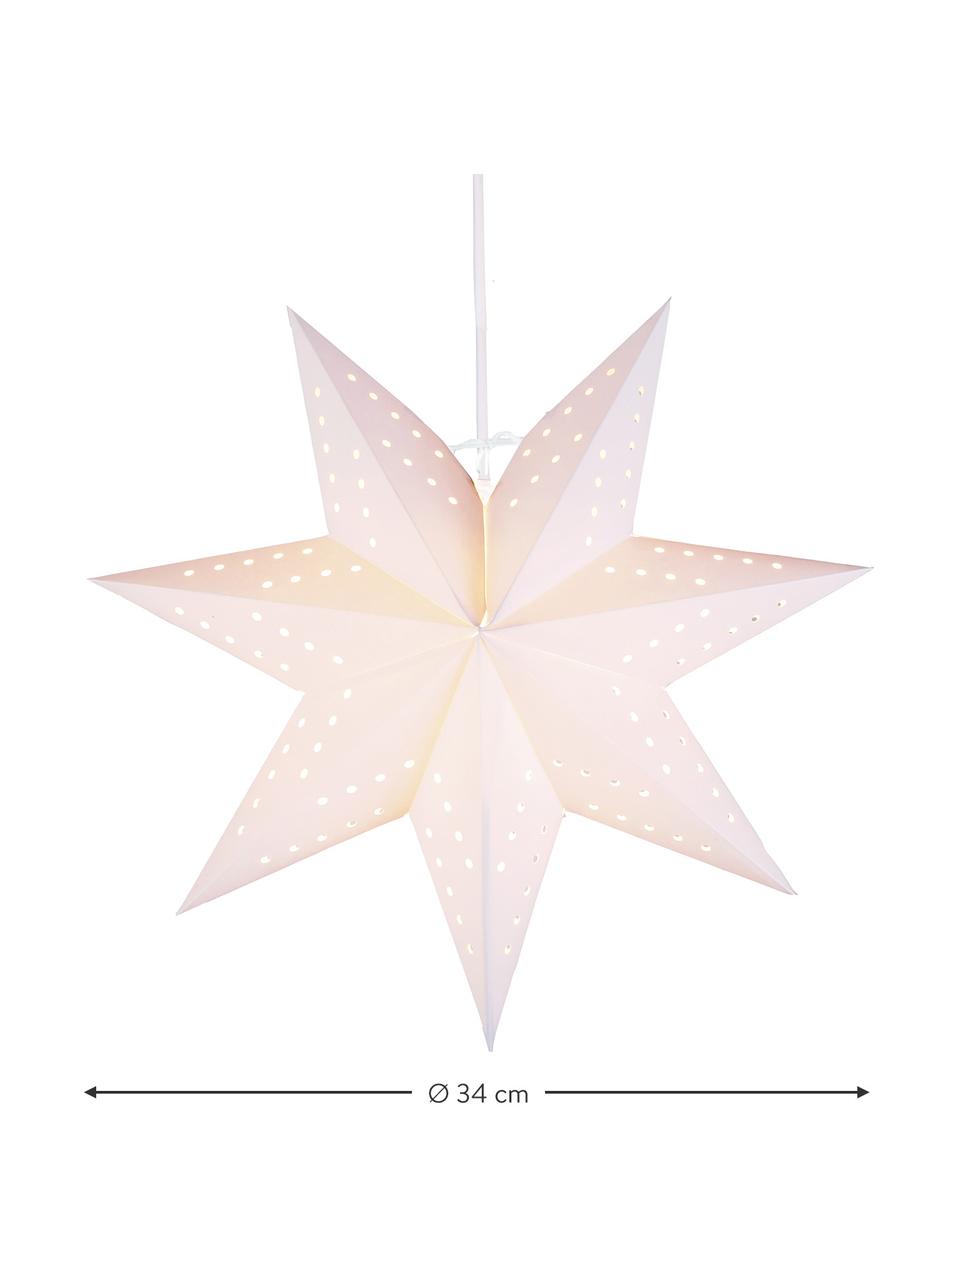 Dekorativní papírová hvězda Bobo, Papír, Krémově bílá, Ø 34 cm